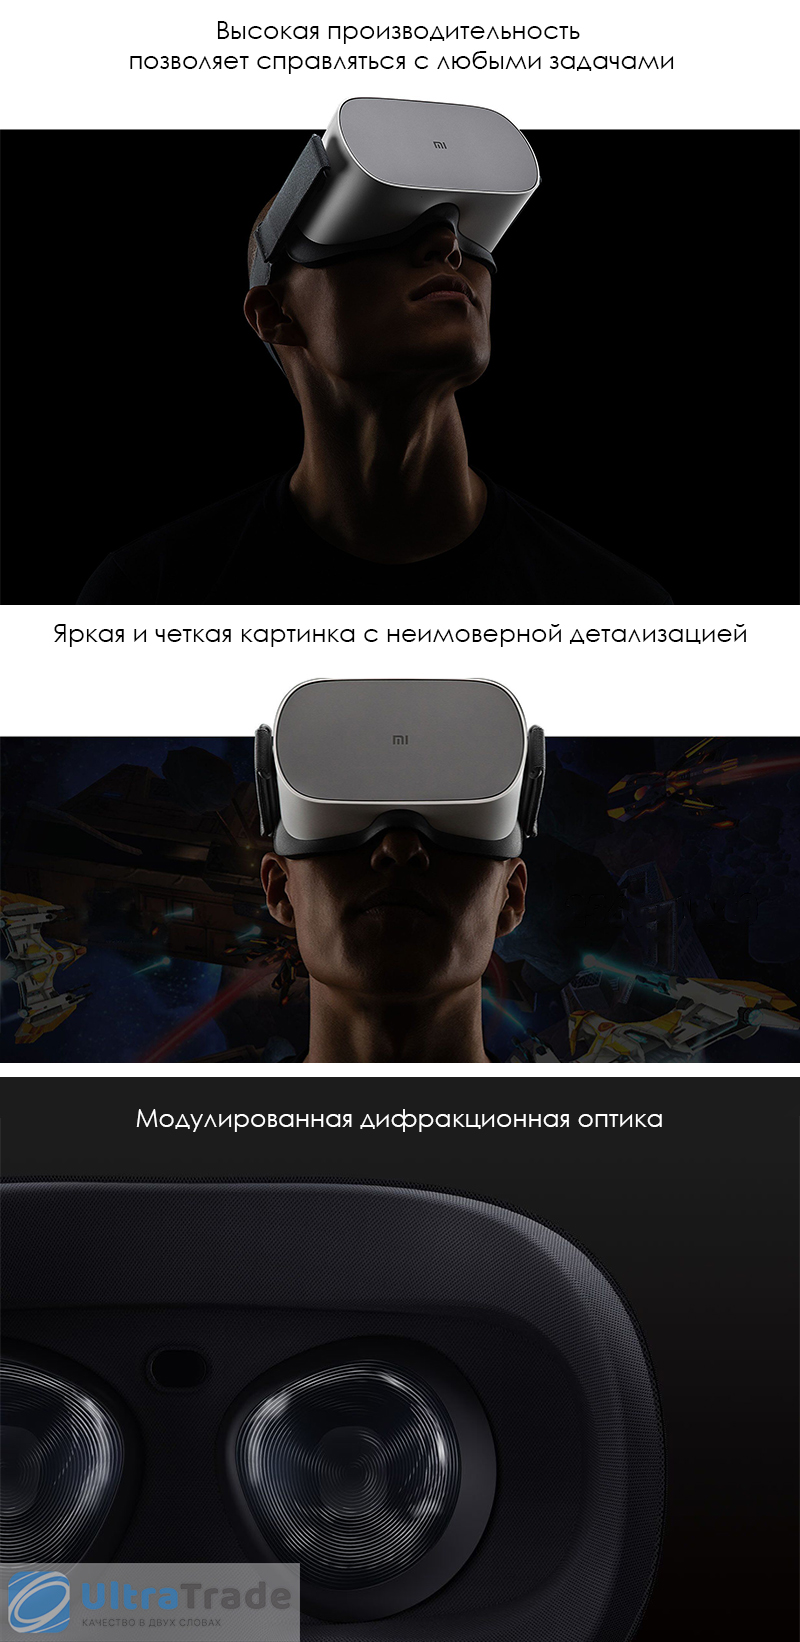 Очки виртуальной реальности Xiaomi Mi VR Standalone 64GB Super Player